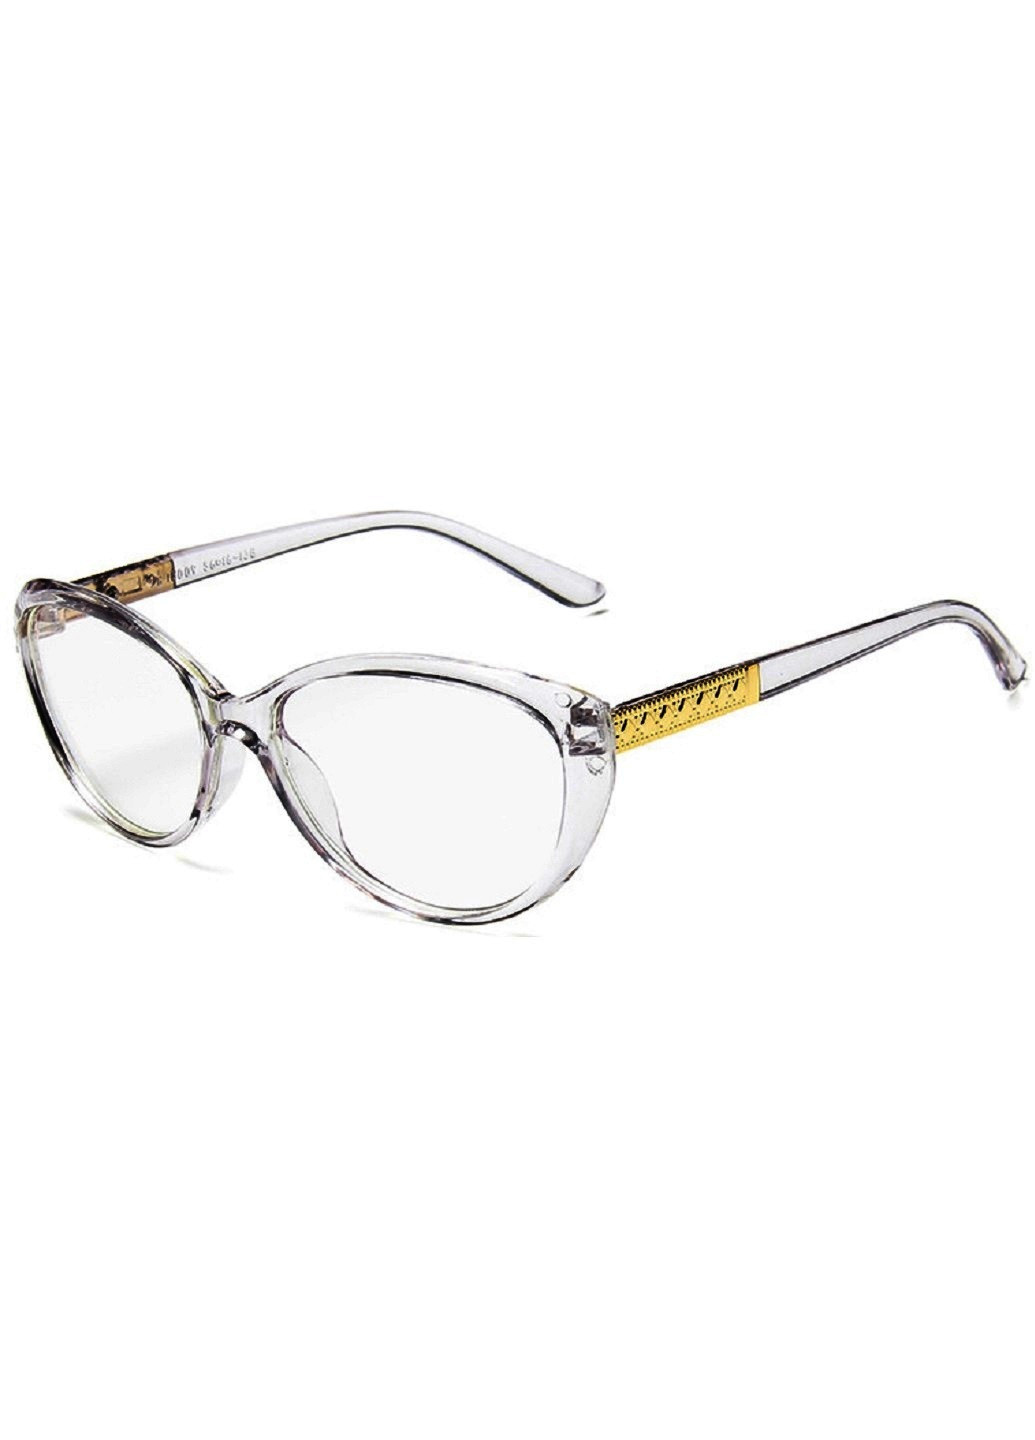 Имиджевые очки A&Co. серые